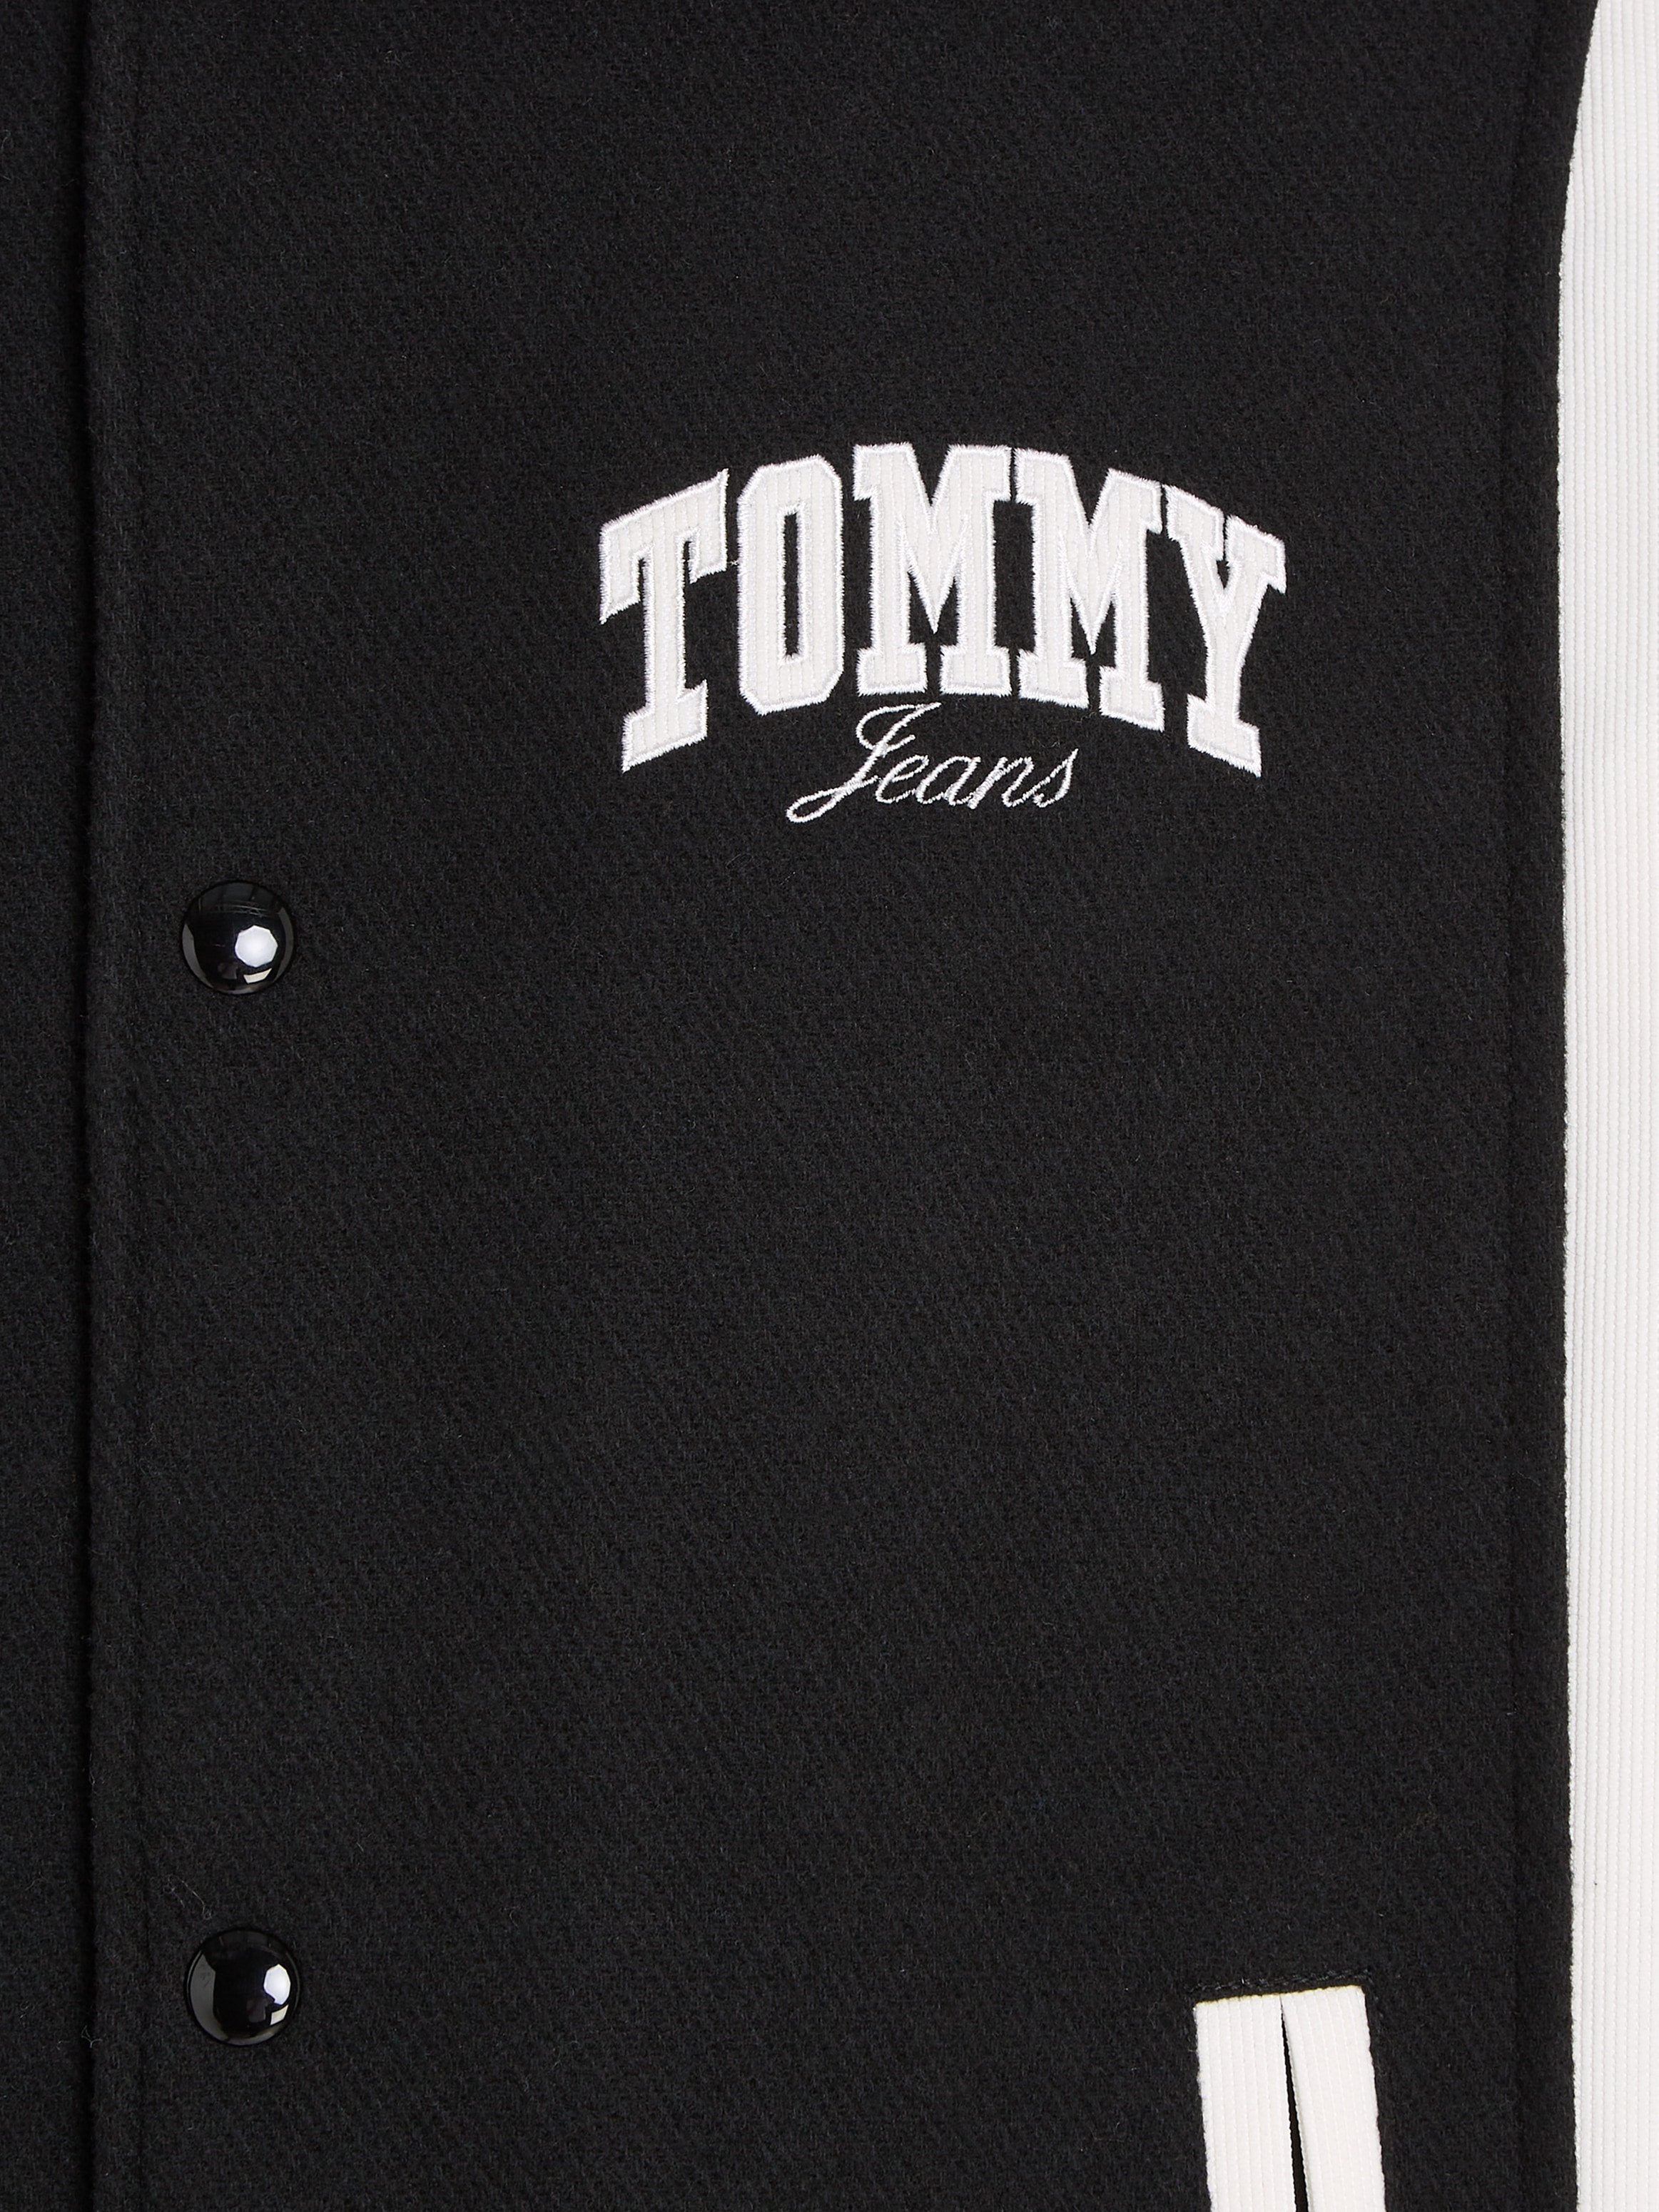 Tommy Jeans Kurzjacke »TJM CORD WOOL MIX LETTERMAN«